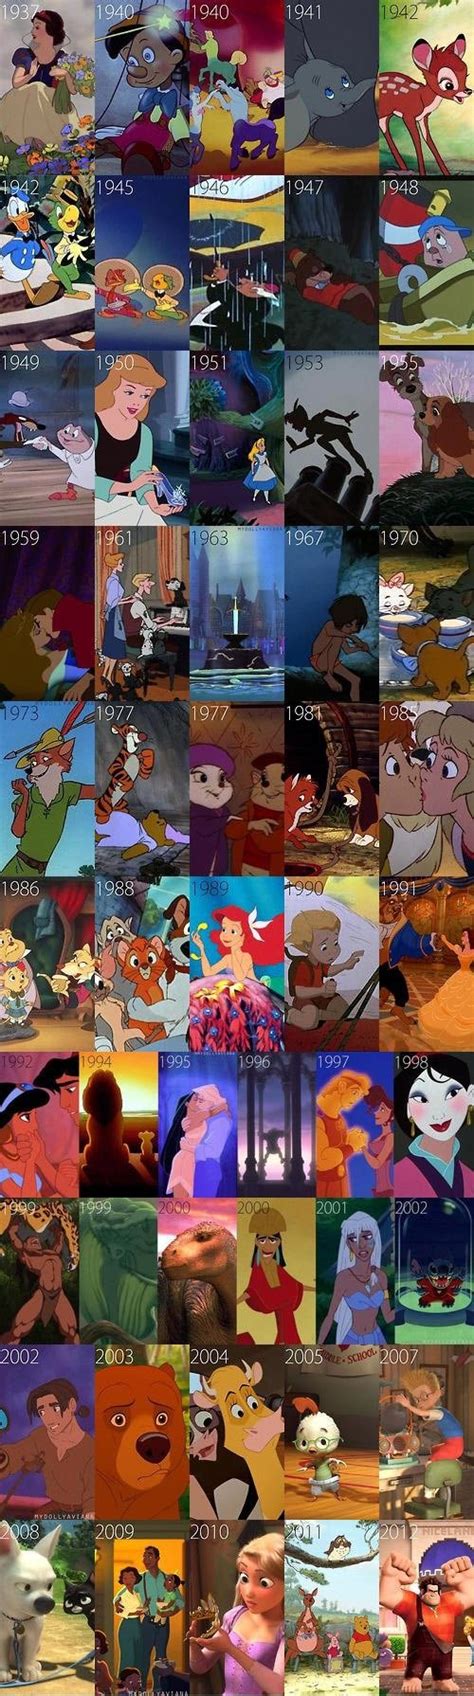 Disney Animated Films List